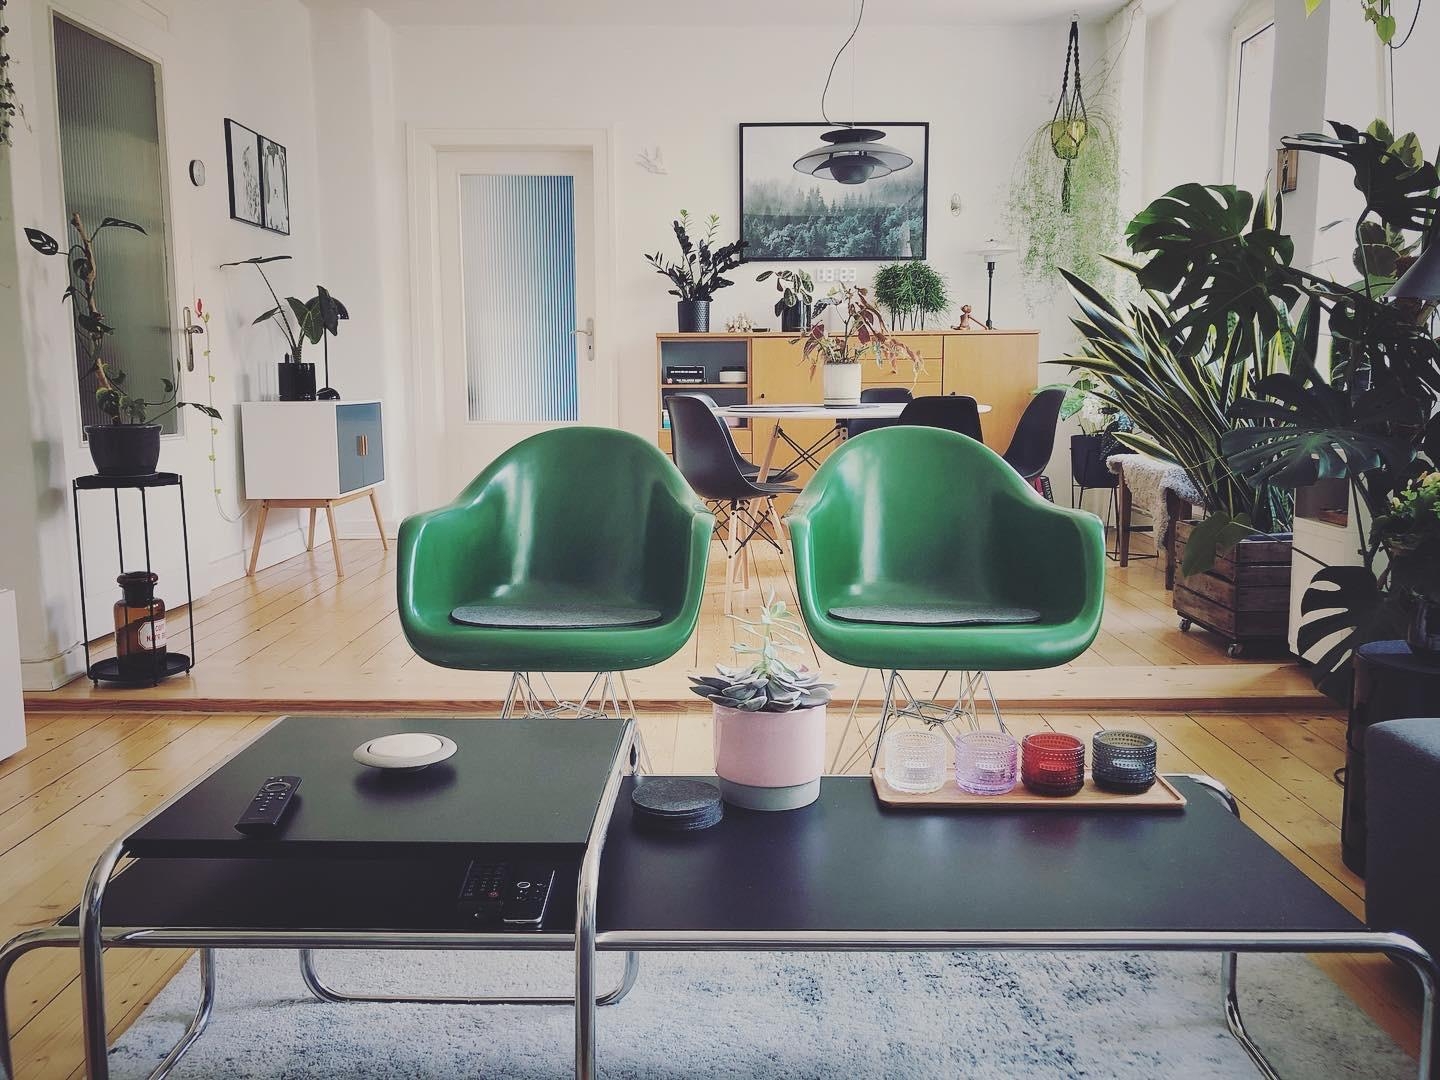 Grün grün grün sind alle meine..... ähhhhh Pflanzen, Stühle #couchstyle #wohnzimmergestaltung #livingchallenge